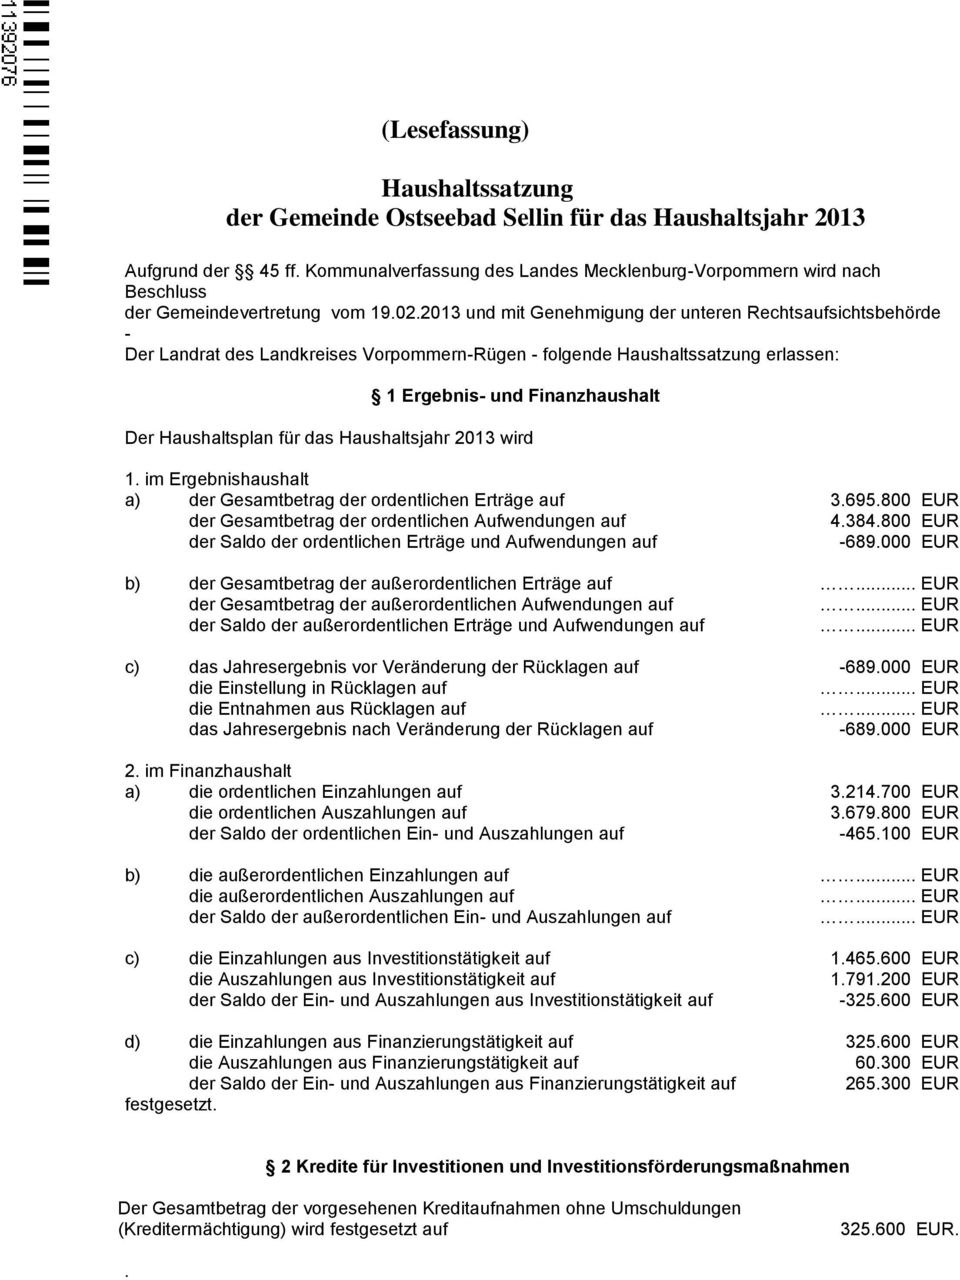 2013 und mit Genehmigung der unteren Rechtsaufsichtsbehörde - Der Landrat des Landkreises Vorpommern-Rügen - folgende Haushaltssatzung erlassen: 1 Ergebnis- und Finanzhaushalt Der Haushaltsplan für